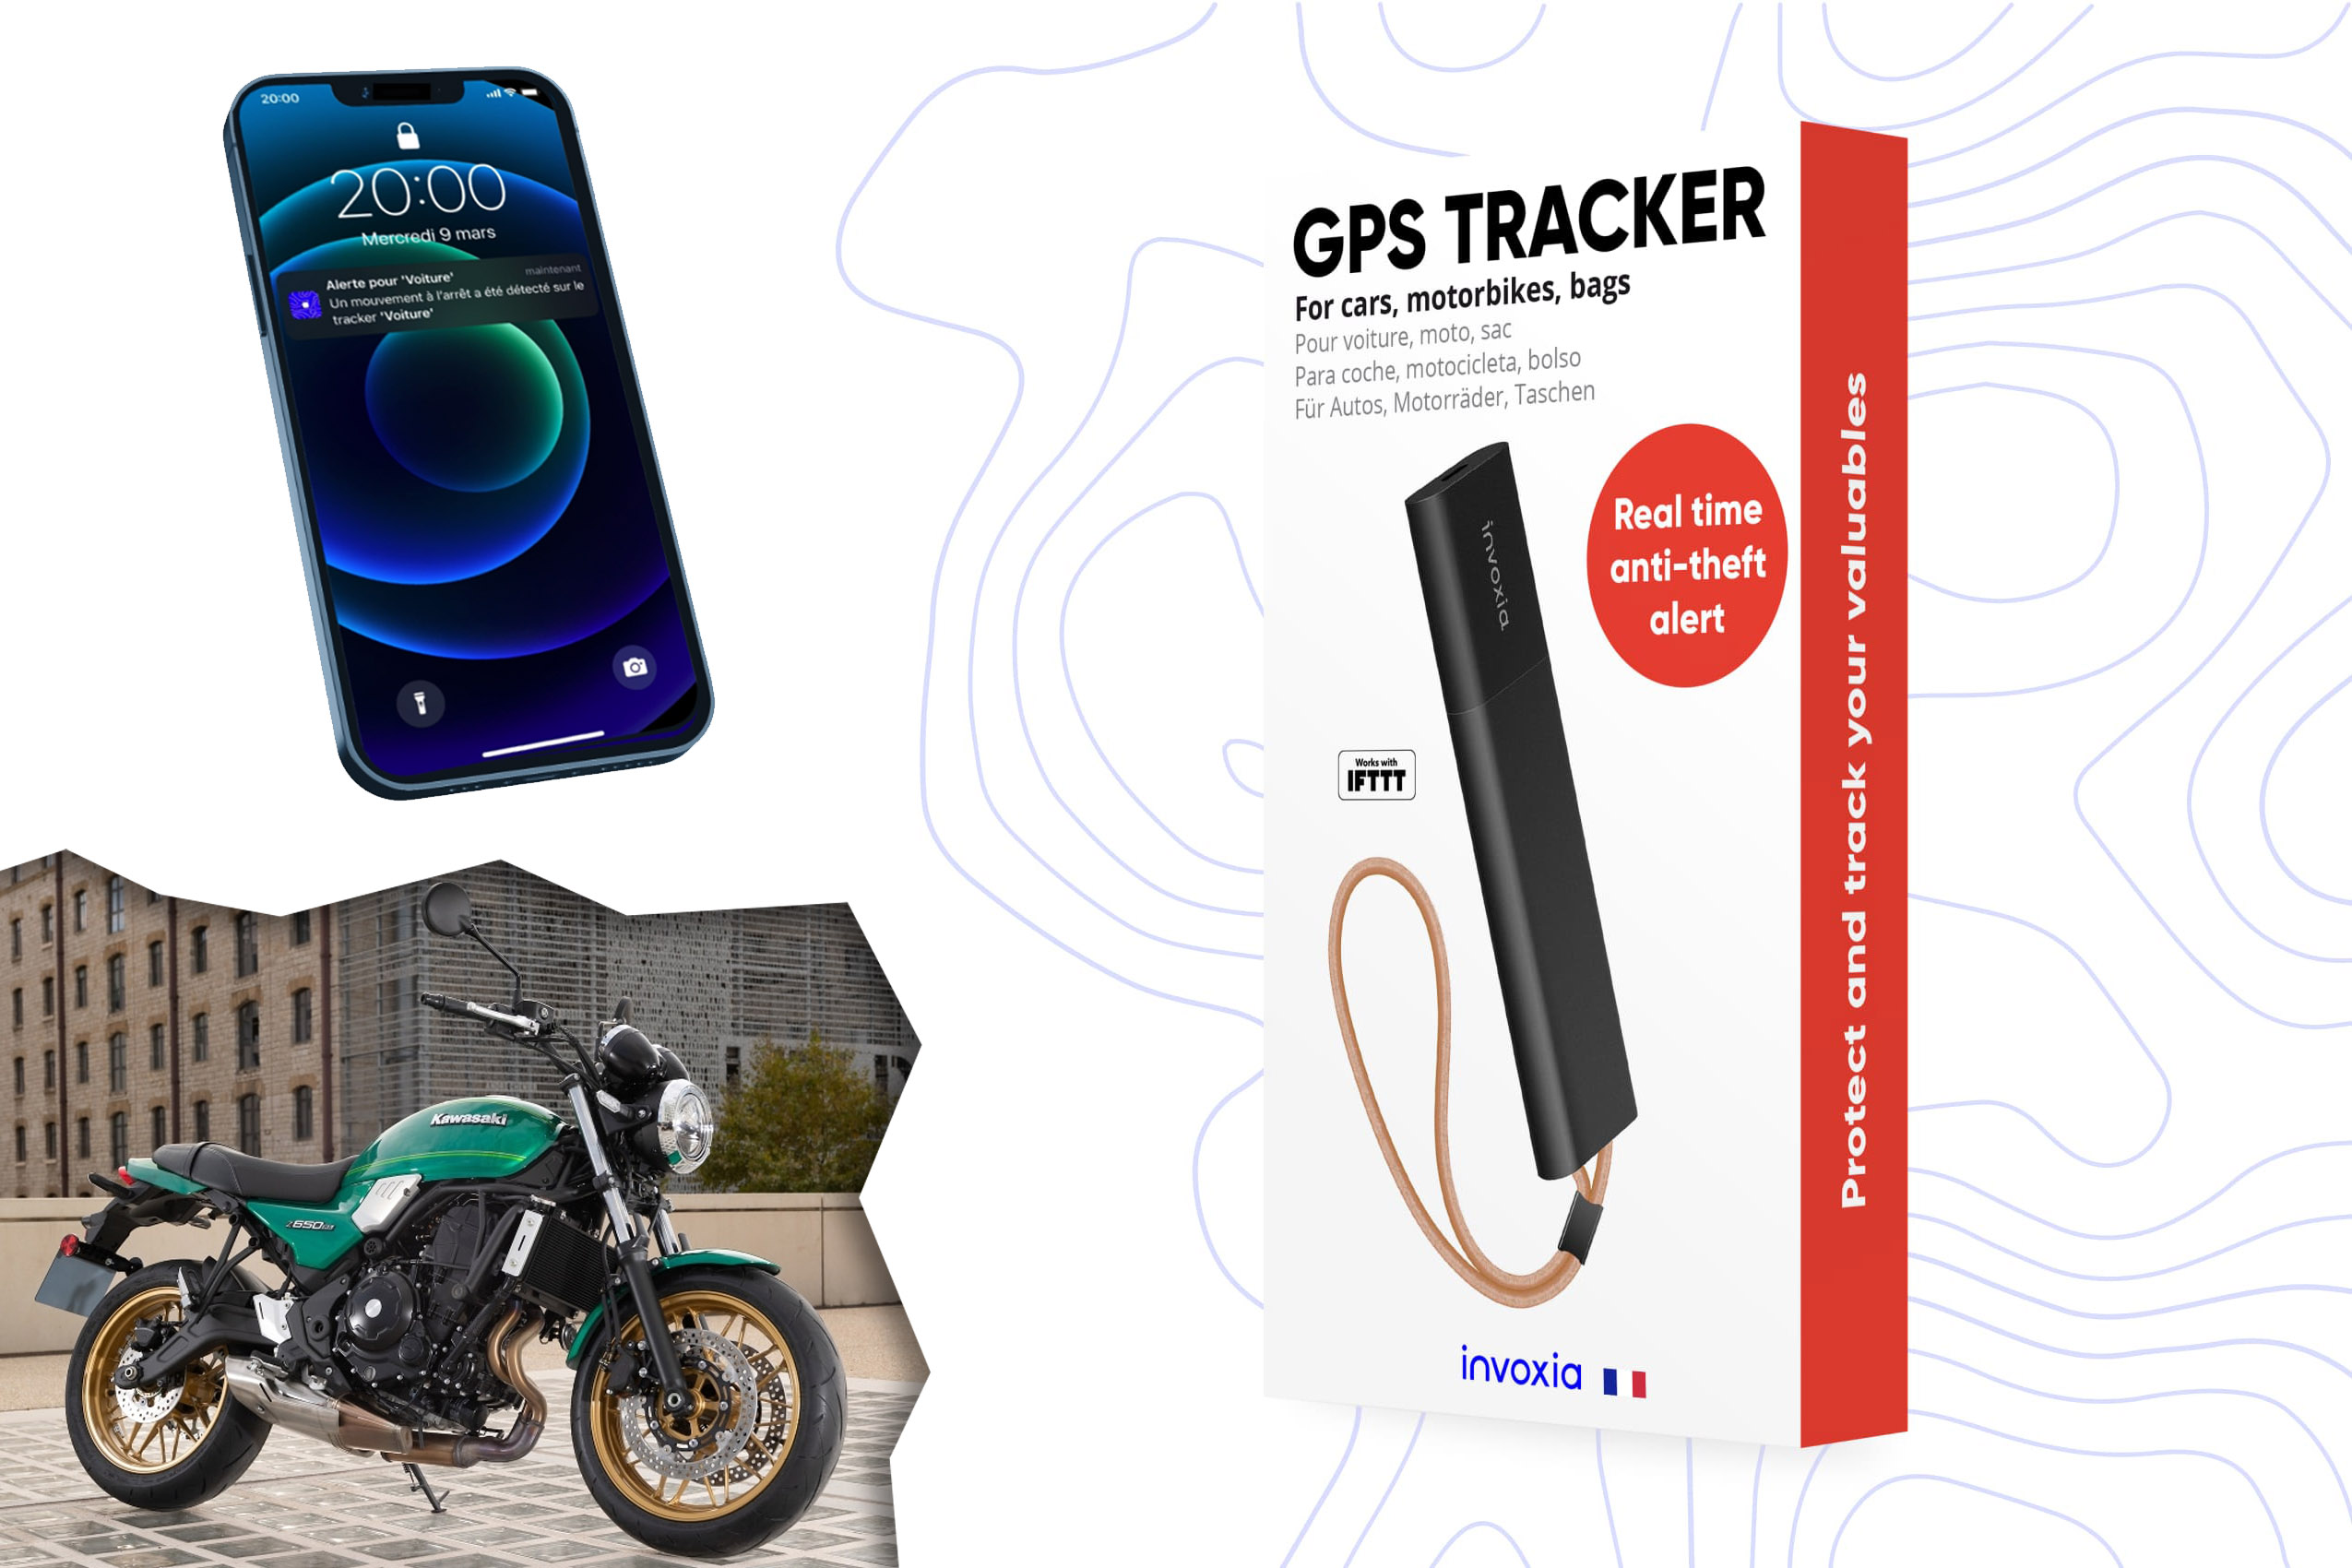 Testé pour vous: Invoxia GPS Tracker Pro - Soirmag